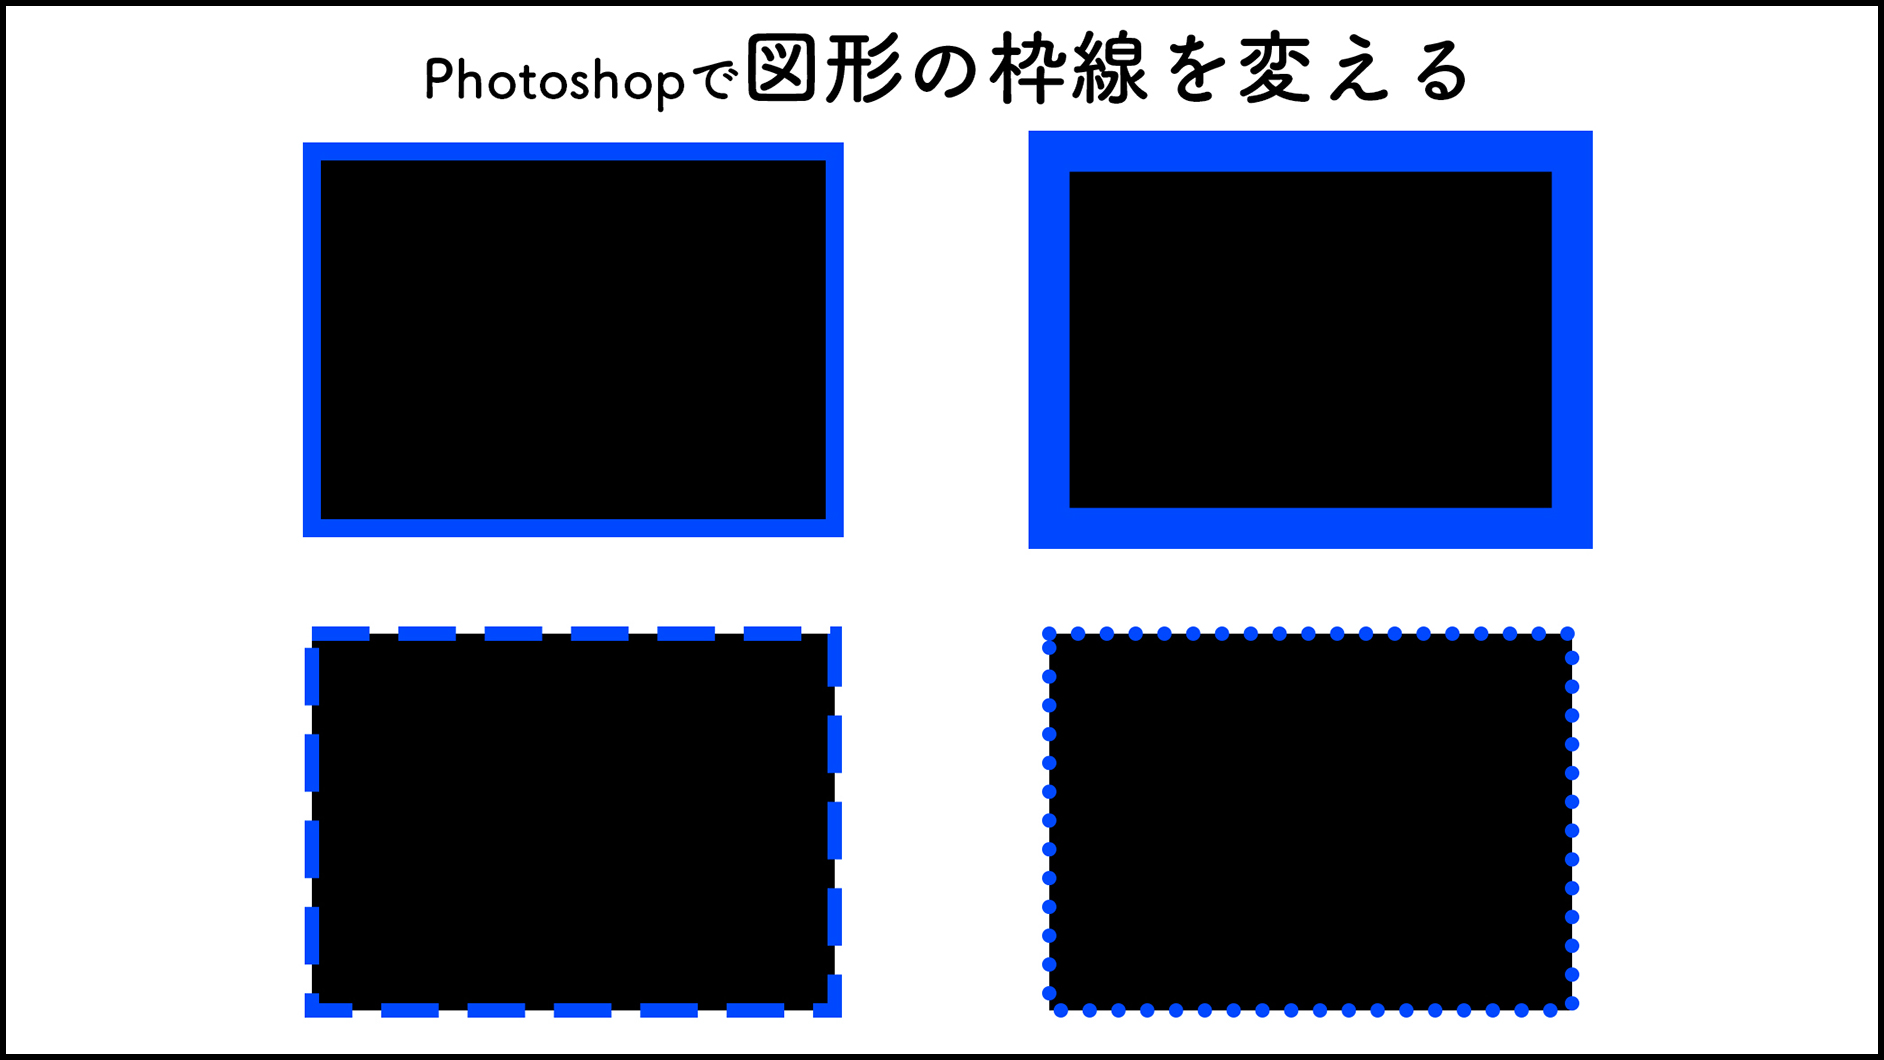 Photoshopで図形の枠線を変える 図形 Photoshop逆引き辞典 デザインってオモシロイ Mdn Design Interactive